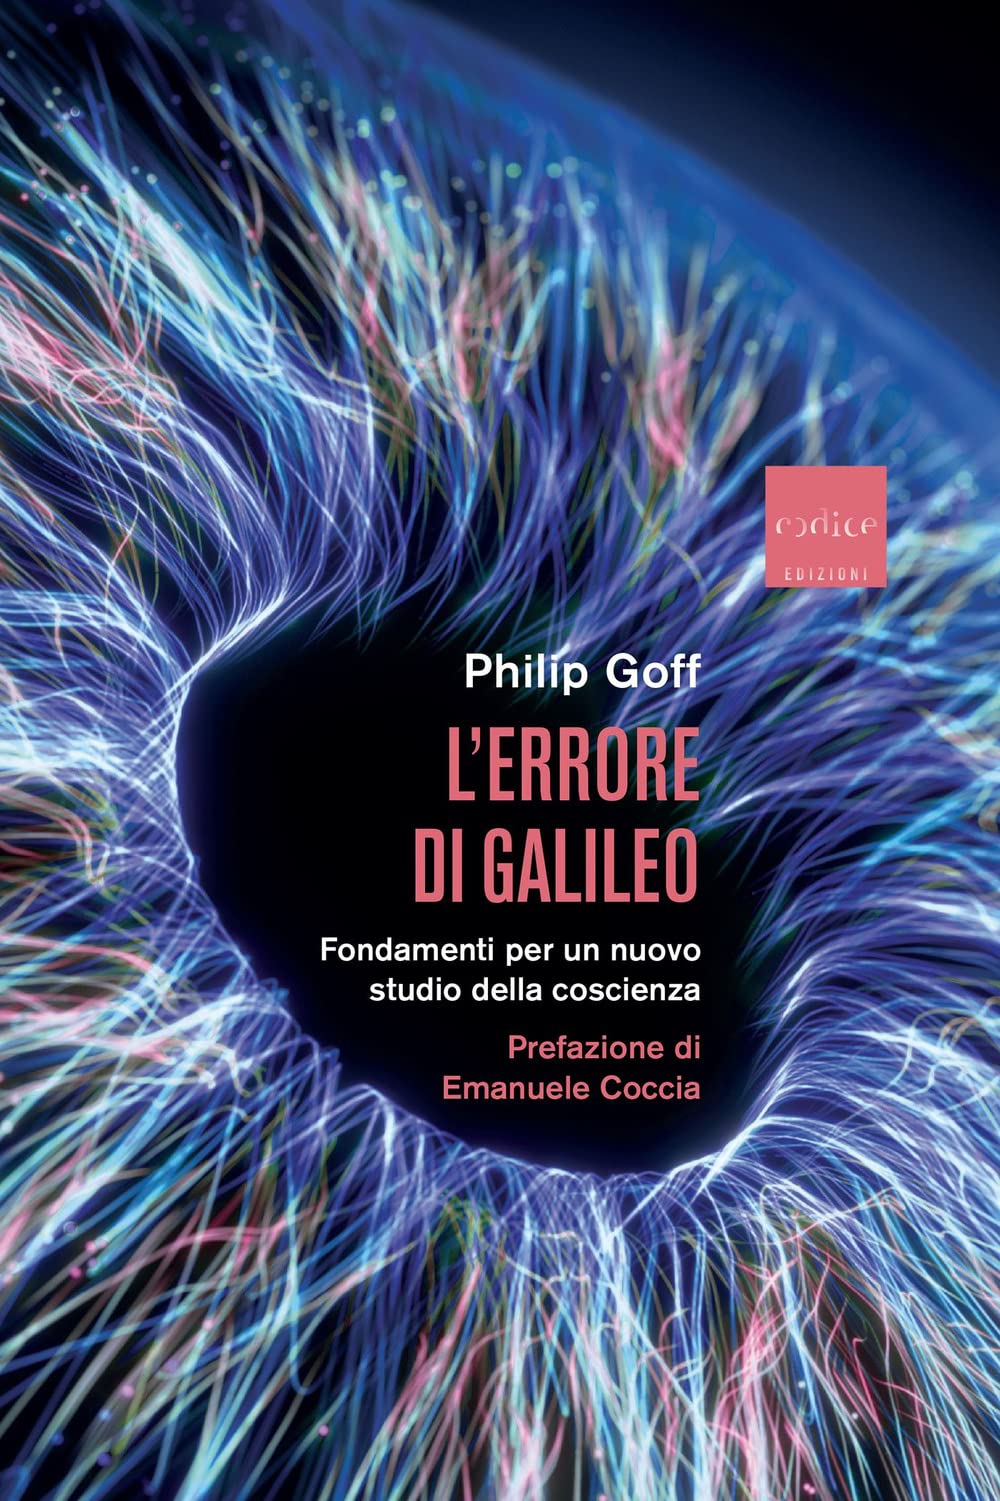 Libri Goff Philip - L' Errore Di Galileo. Fondamenti Per Un Nuovo Studio Della Coscienza NUOVO SIGILLATO, EDIZIONE DEL 22/02/2023 SUBITO DISPONIBILE